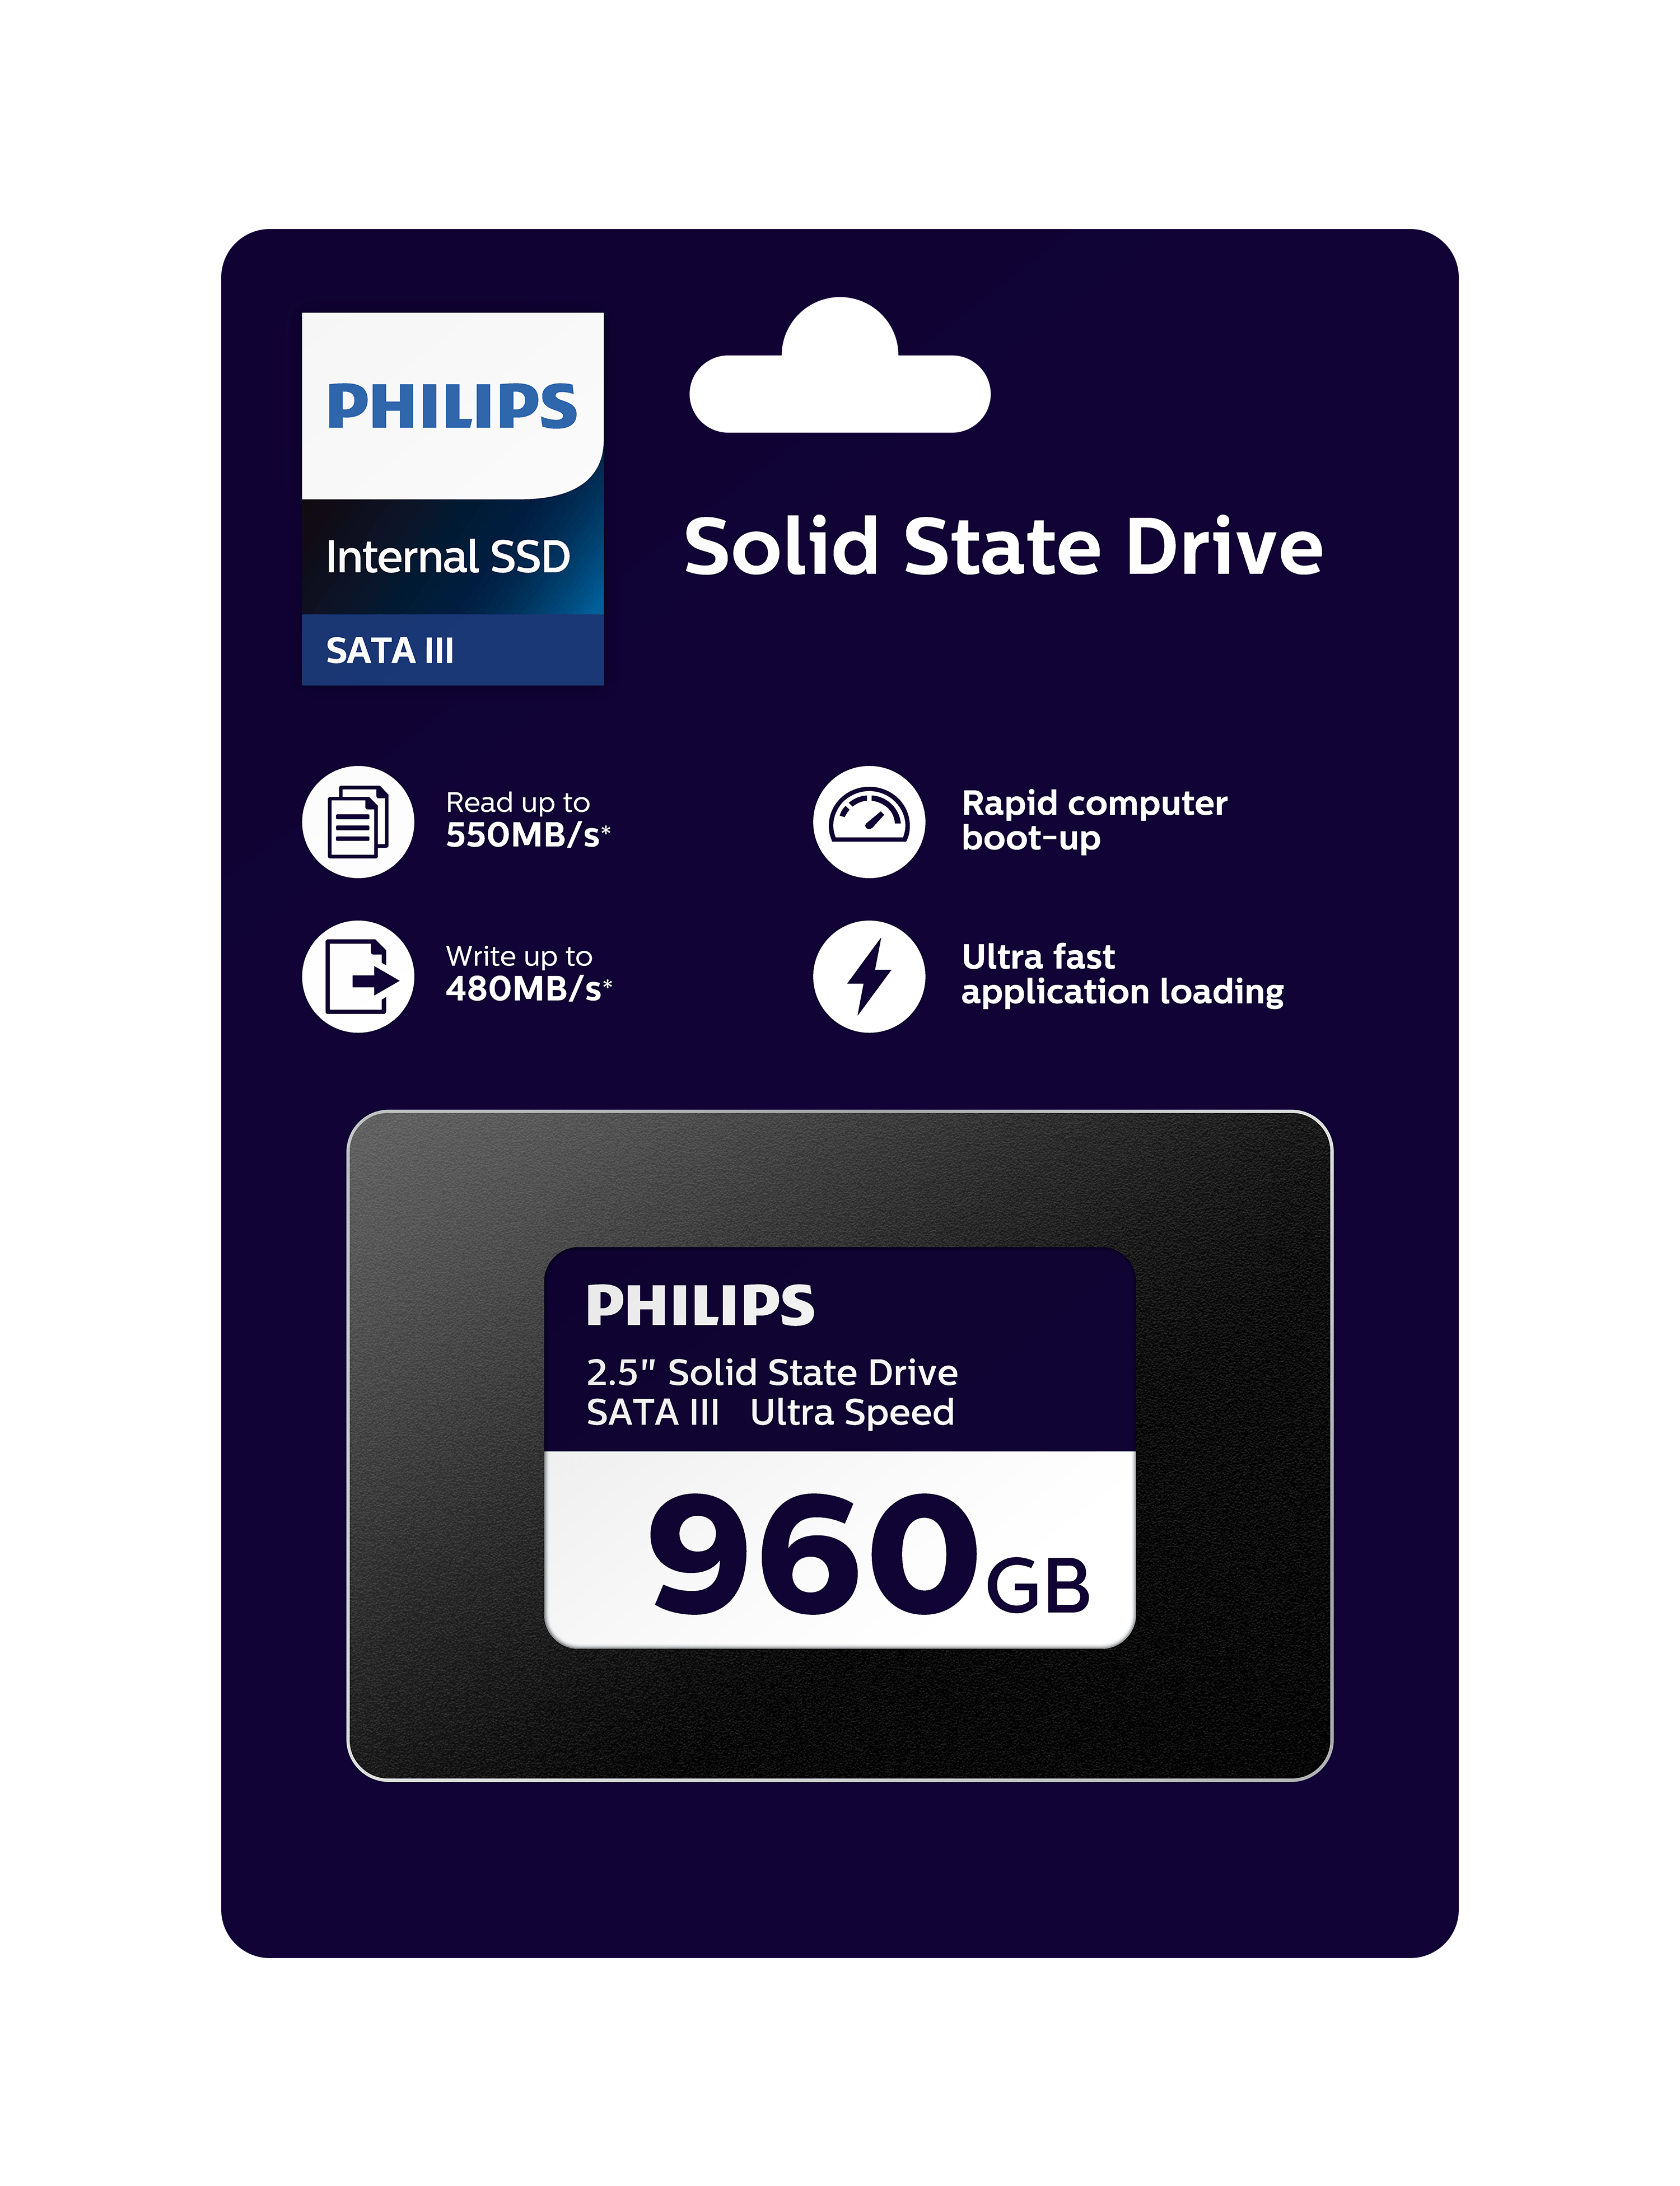 draaipunt gelijkheid Normaal Philips komt met goedkope SSD: (bijna) 1 terabyte voor 70 euro | TechFi